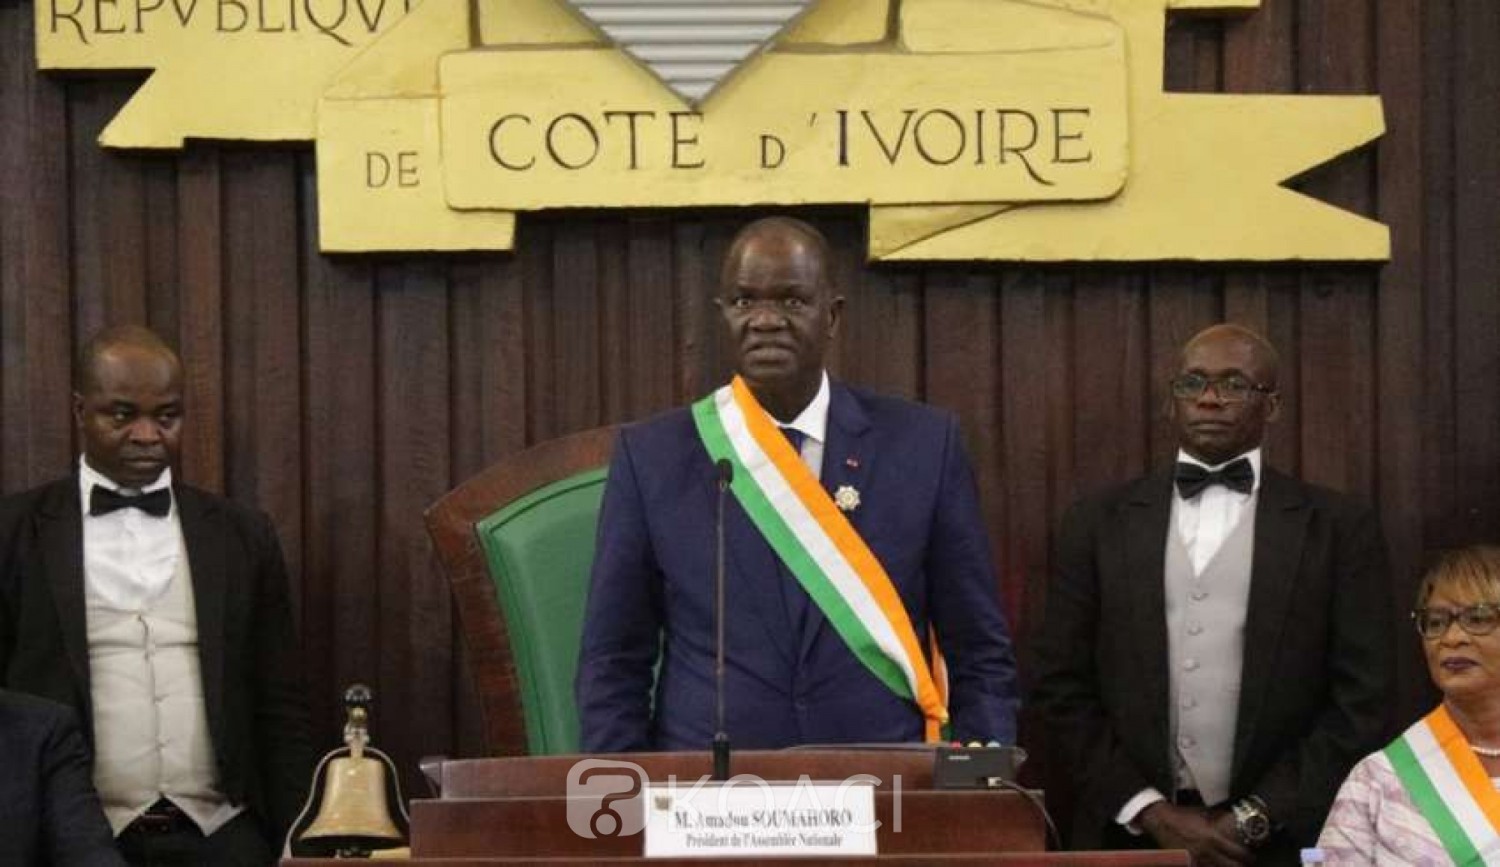 Côte d'Ivoire:  Assemblée nationale, le bureau lève l'immunité parlementaire de Guillaume Soro et 5 députés proches de lui